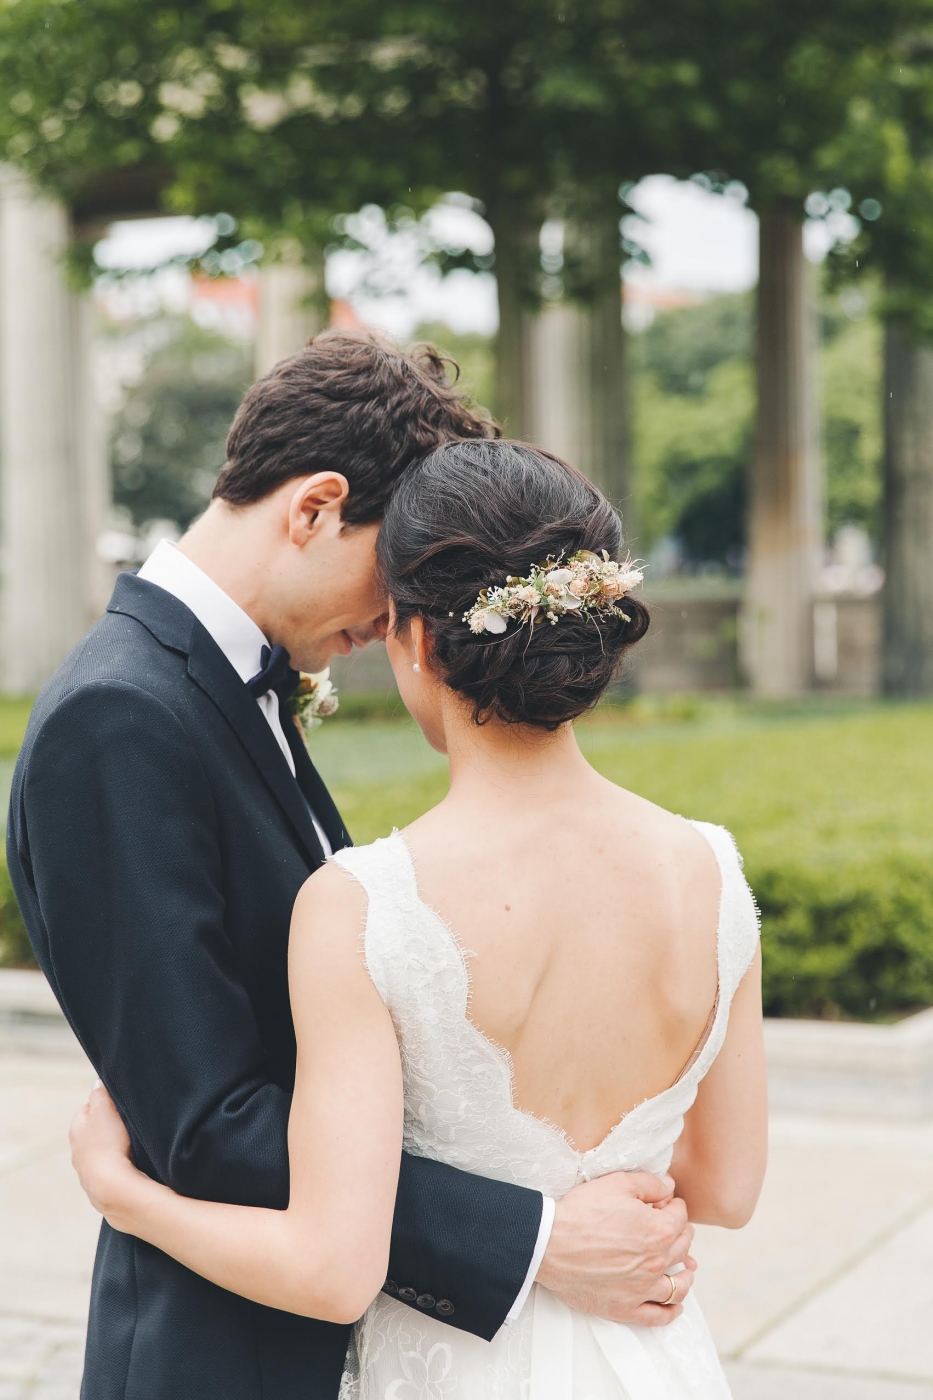 Braut und Bräutigam umarmen sich in einem Garten, die Braut trägt ein elegantes Hochzeitskleid.